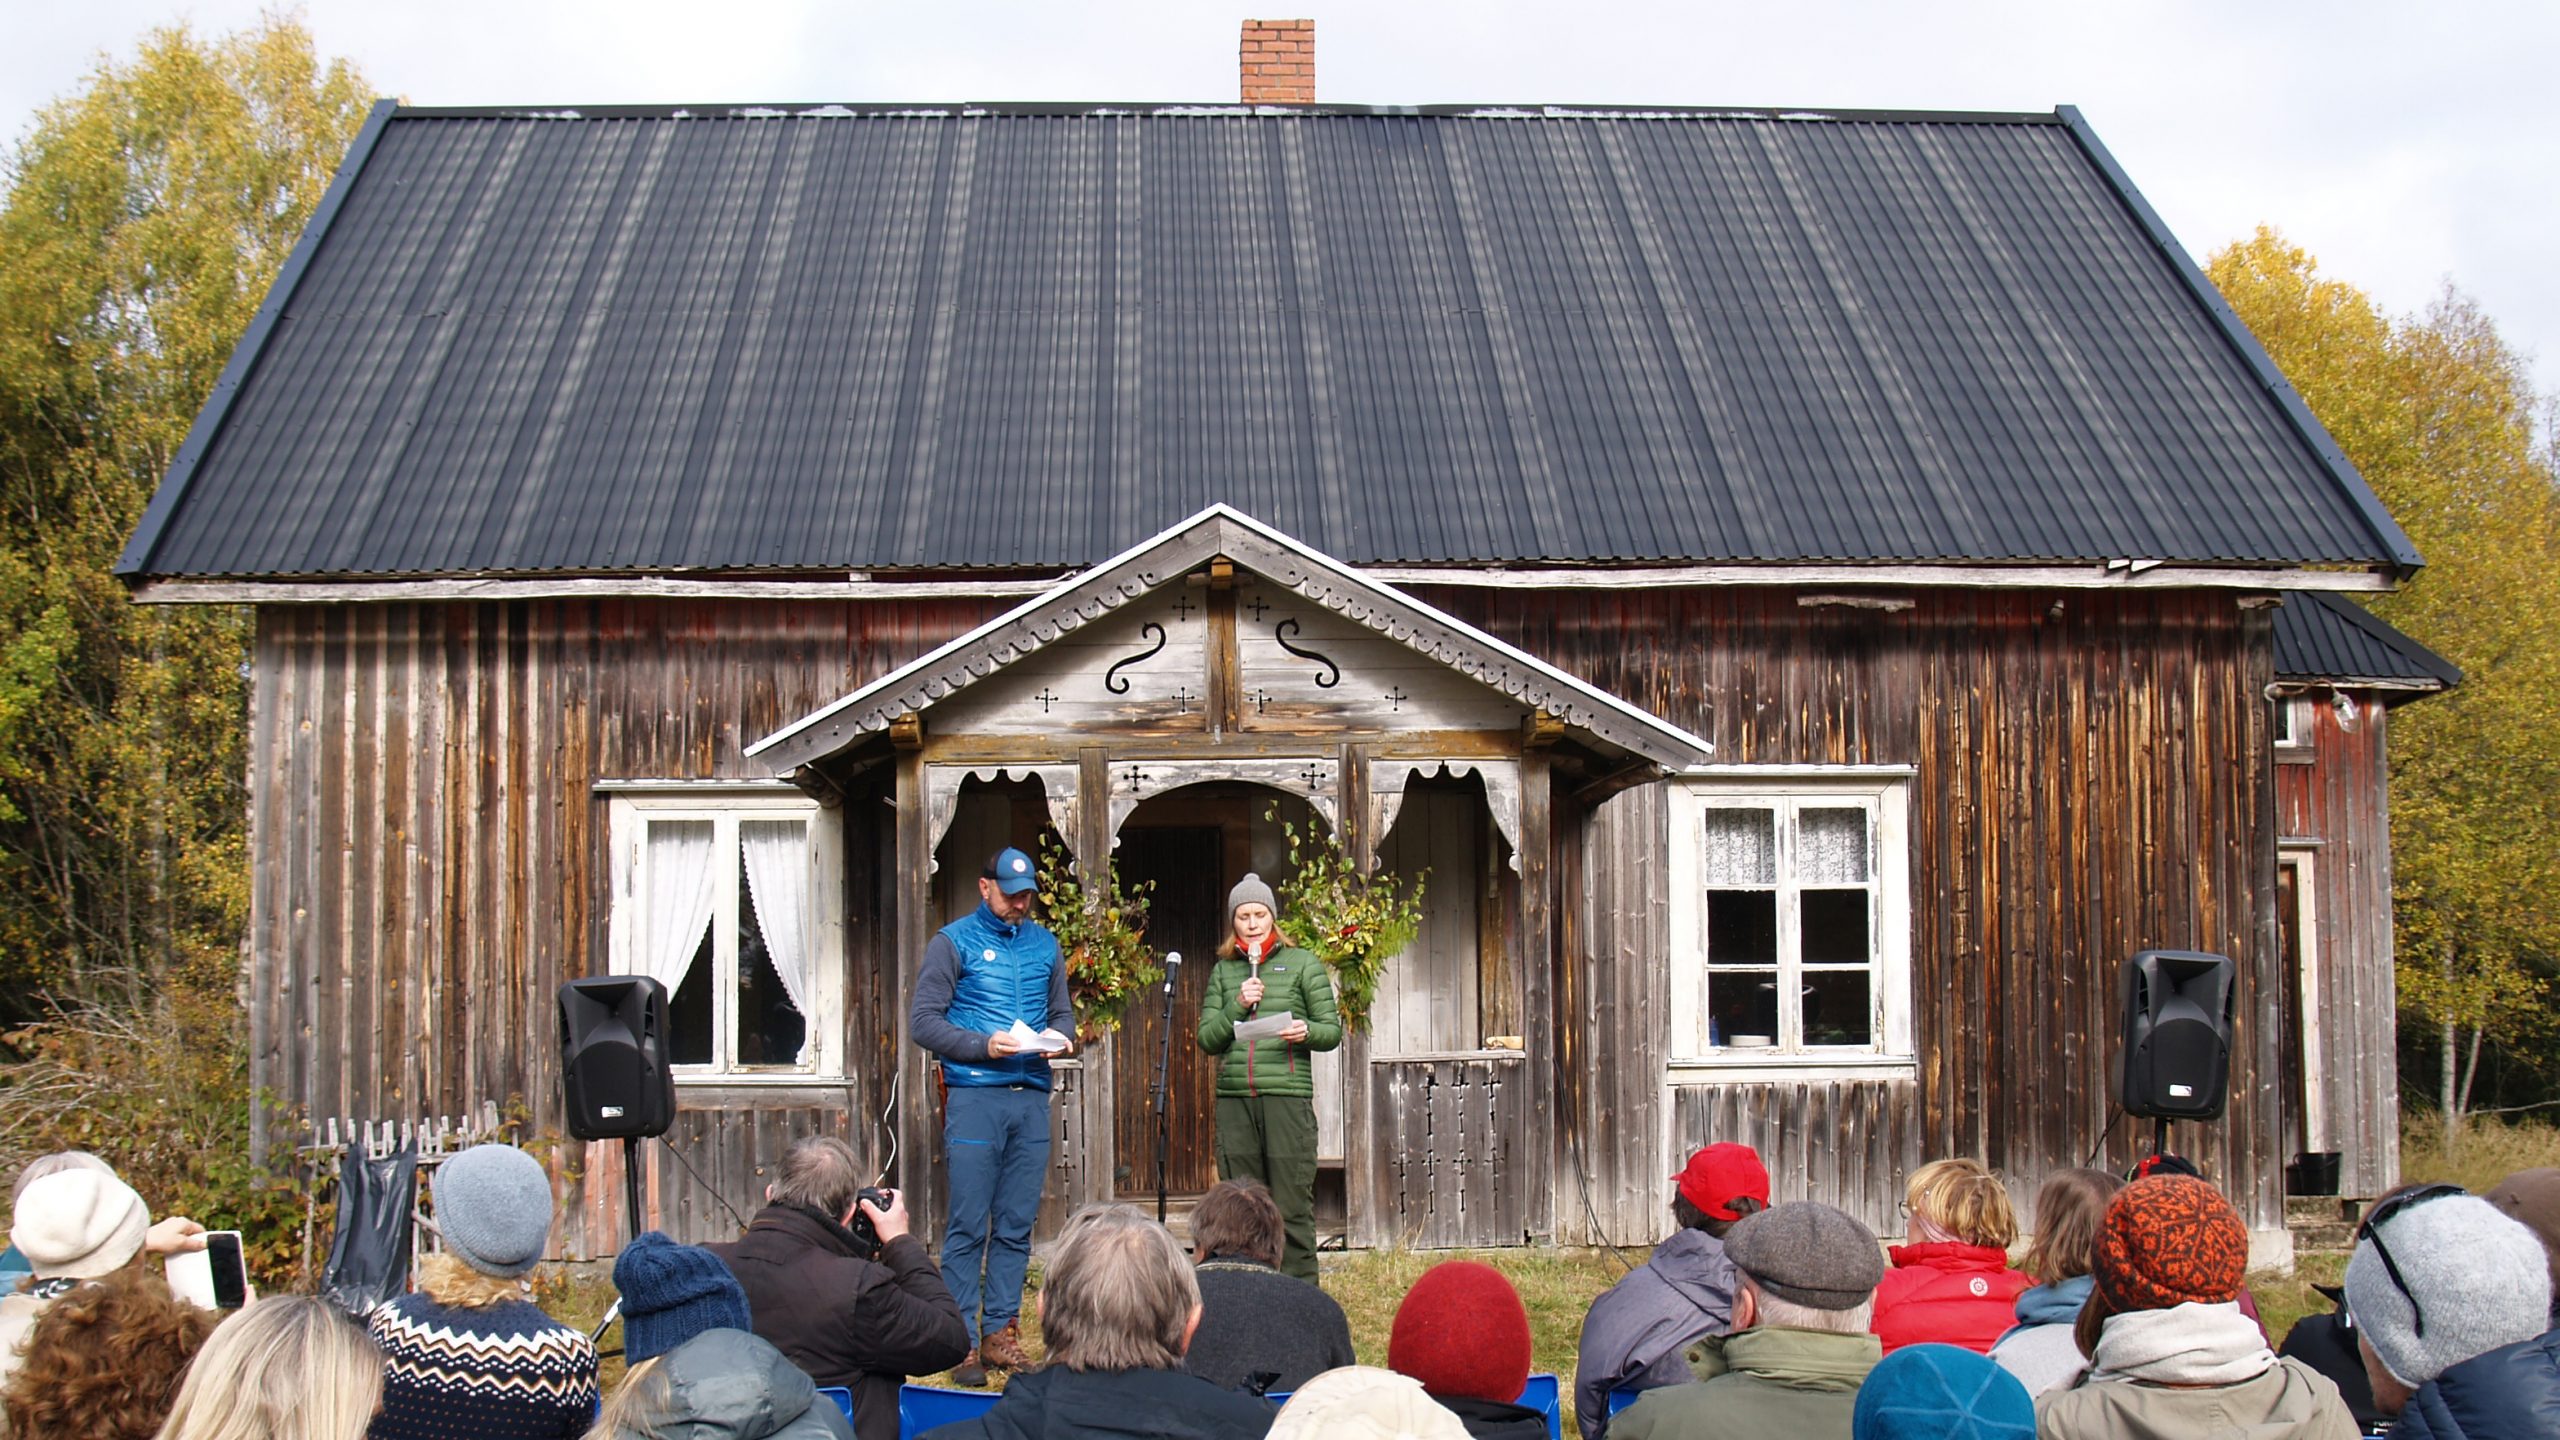 Bilde av Riksantikvar Hanna Geiran som ønsker de fremmøtte velkommen til åpen familiedag i Abborhøgda i Finnskogen som ligger i Kongsvinger kommune. Fotograf Synne Vik Torsdottir, Riksantikvaren